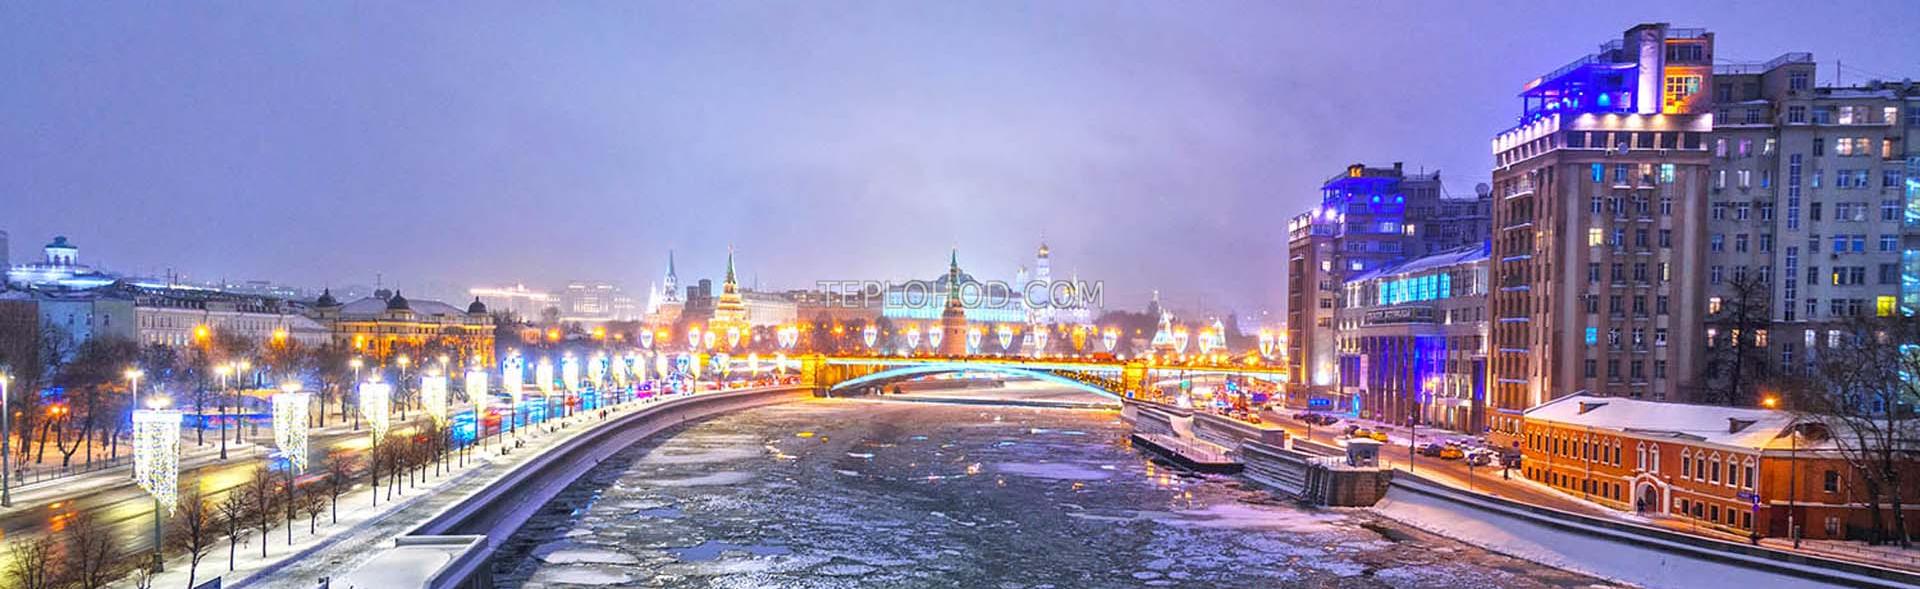 Новогодние прогулки по Москве-реке на теплоходе Жемчужина" с живой музыкой и ужином